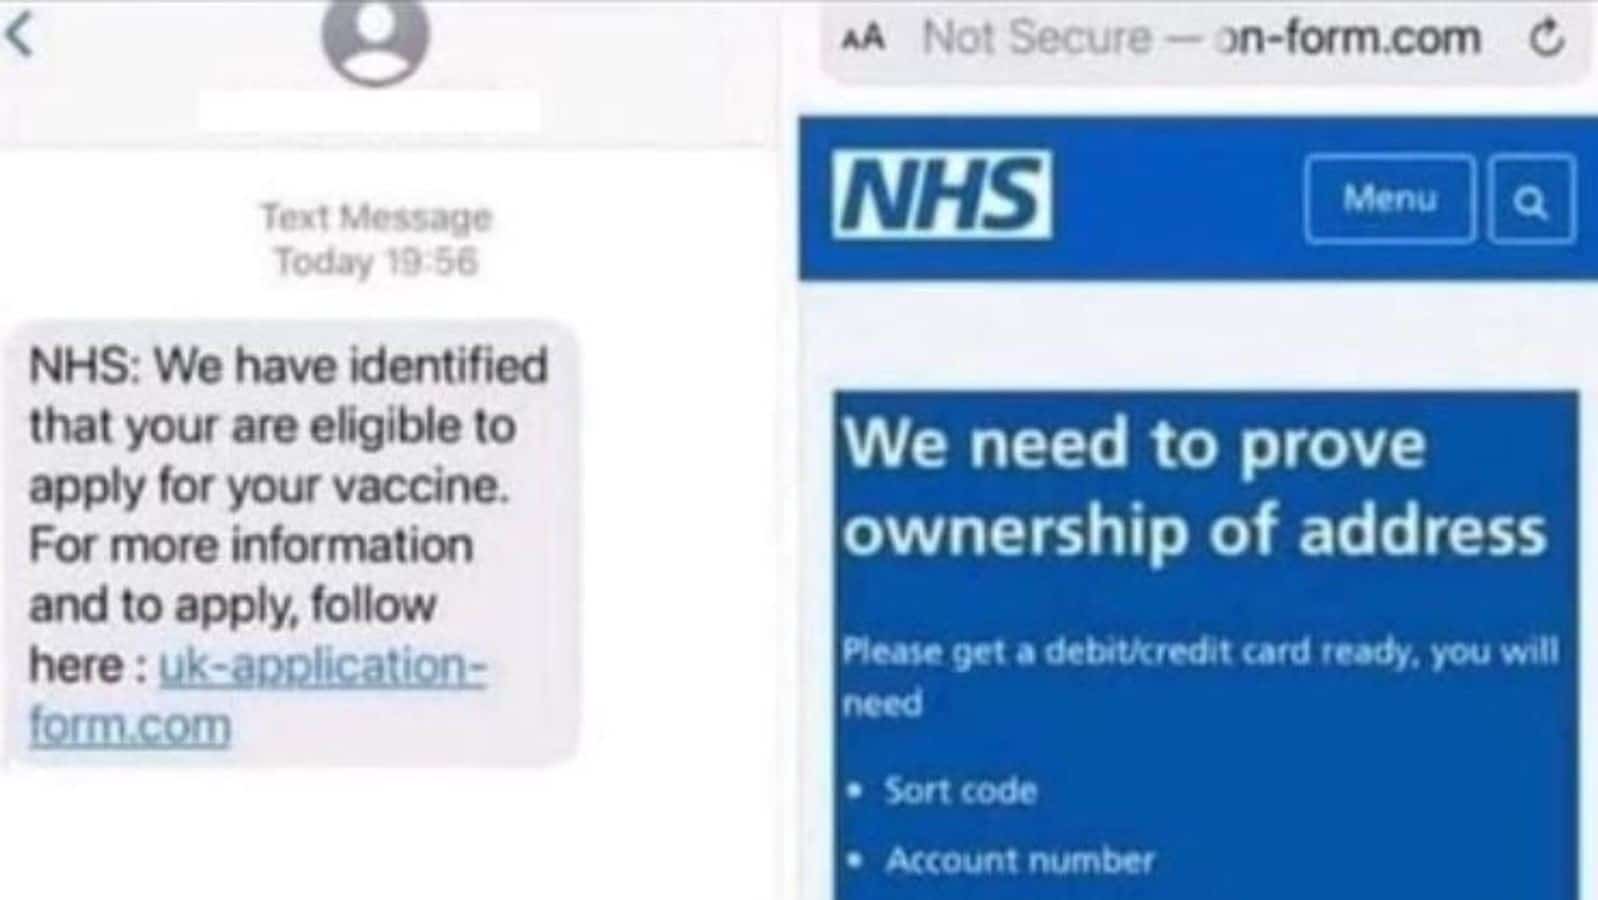 إنجلترا: رسائل مزيفة من NHS تطالب الناس بمعلوماتهم المصرفية مقابل لقاح كورونا